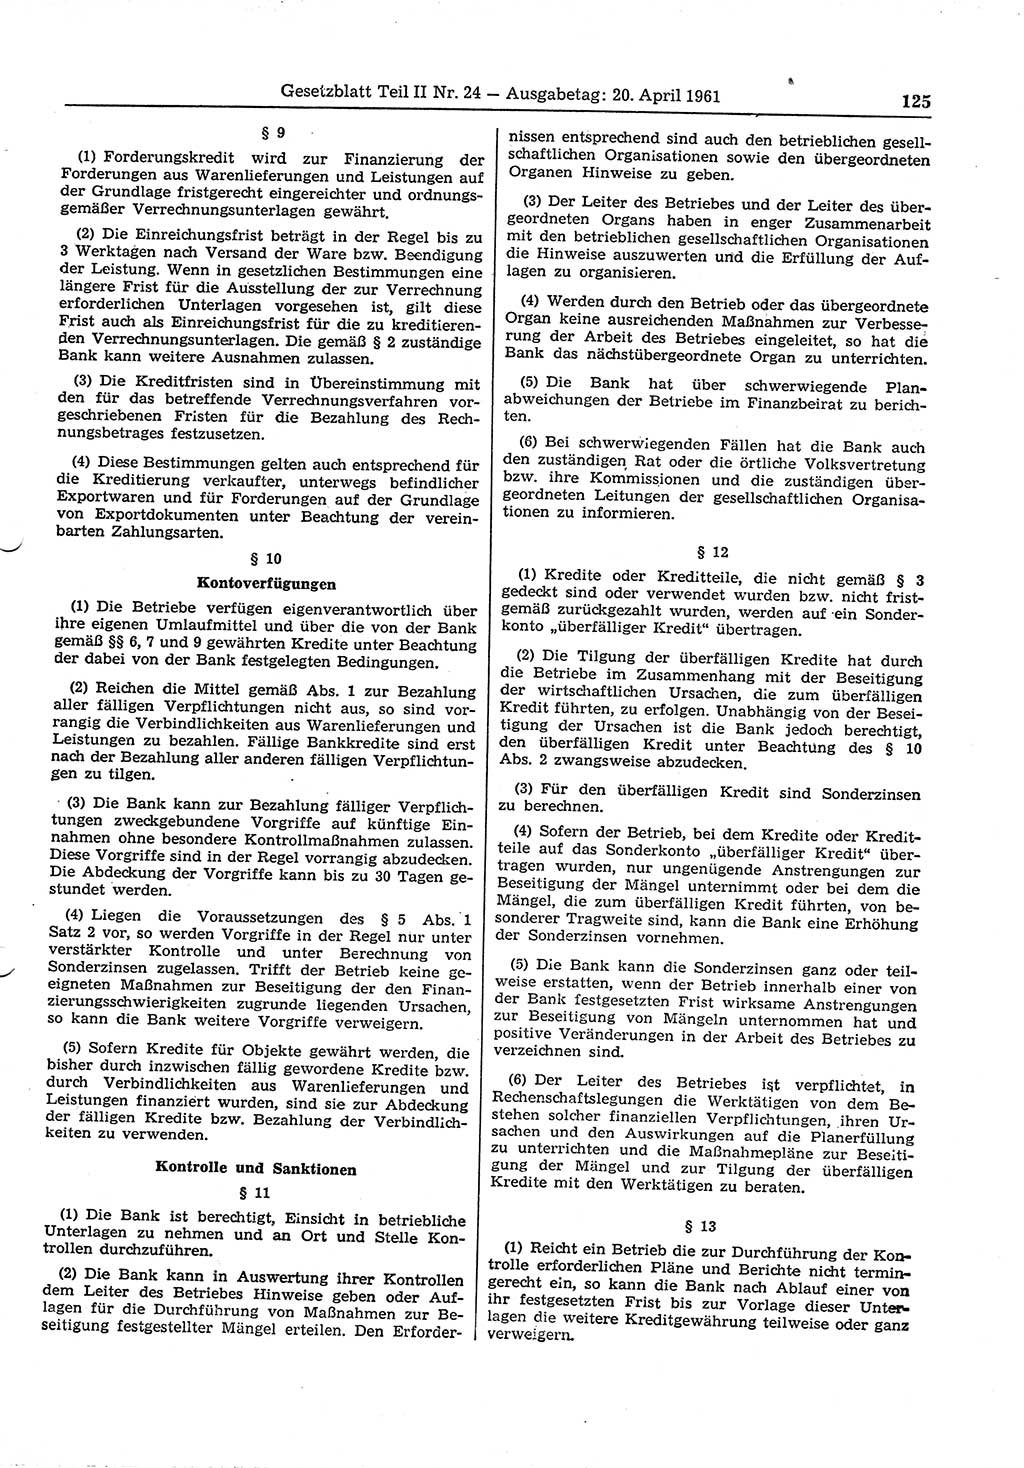 Gesetzblatt (GBl.) der Deutschen Demokratischen Republik (DDR) Teil ⅠⅠ 1961, Seite 125 (GBl. DDR ⅠⅠ 1961, S. 125)